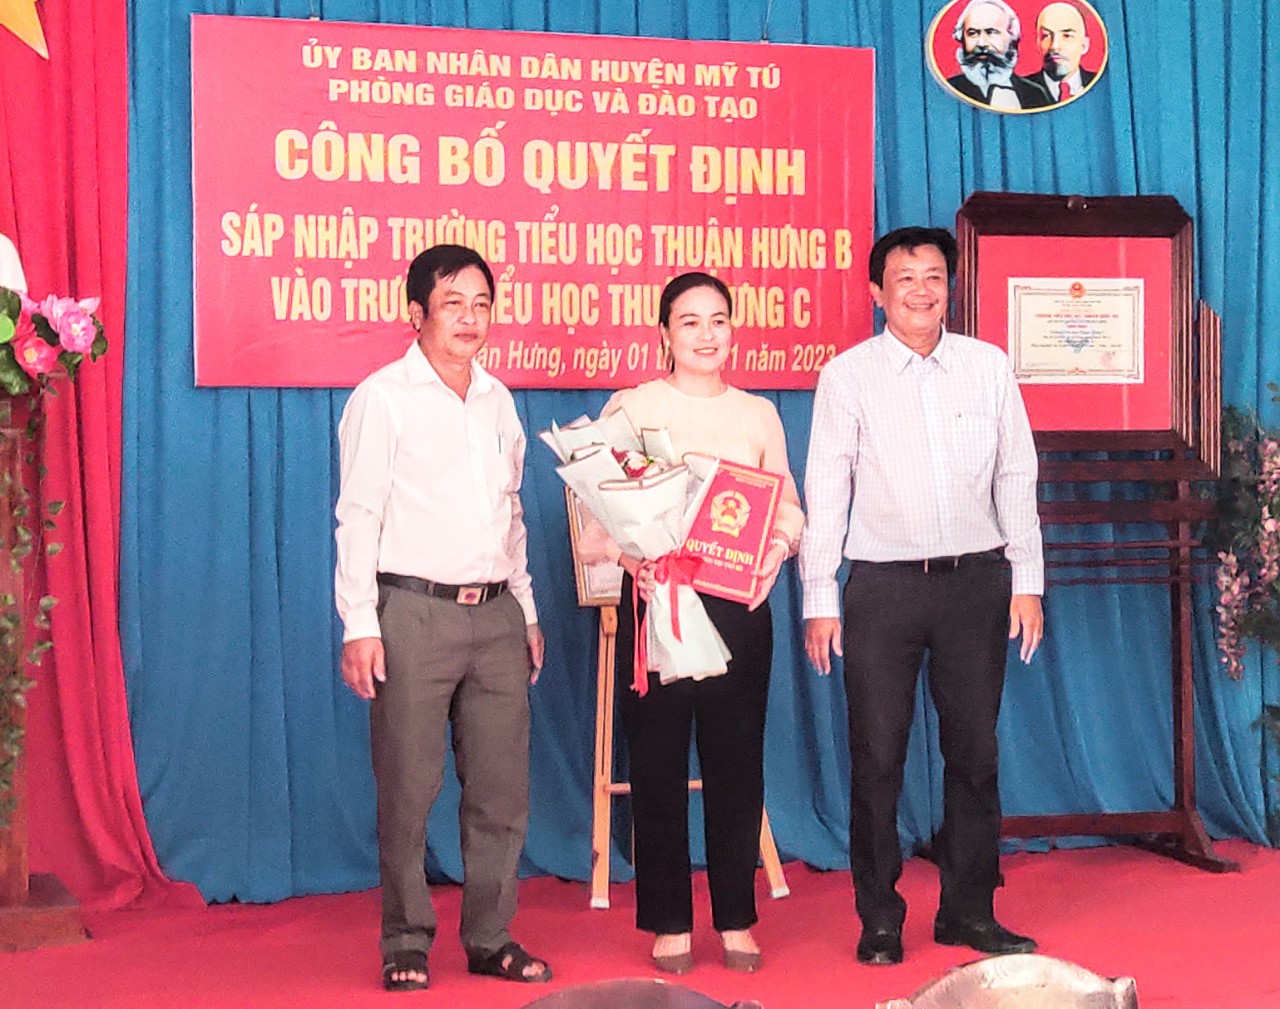 Công bố Quyết định sáp nhập Trường tiểu học Thuận Hưng B vào Trường Tiểu học Thuận Hưng C